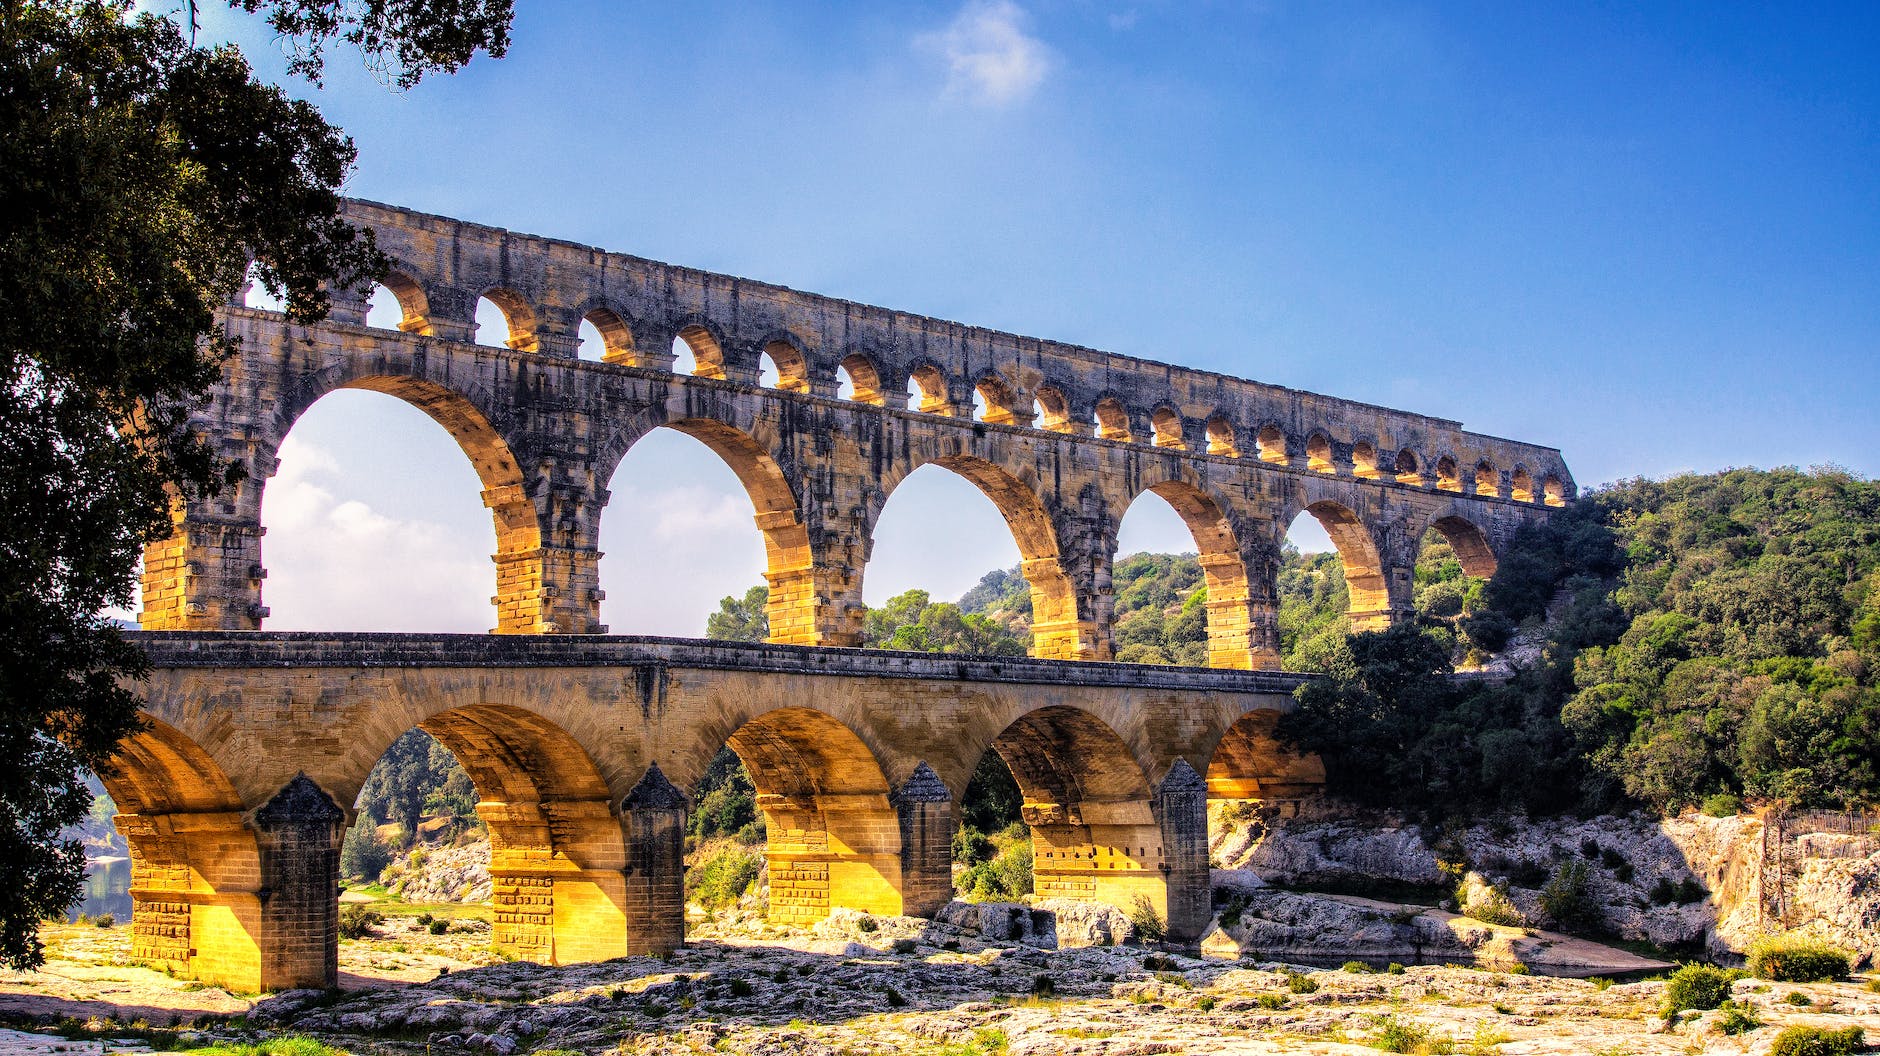 pont du gard roman aqueduct